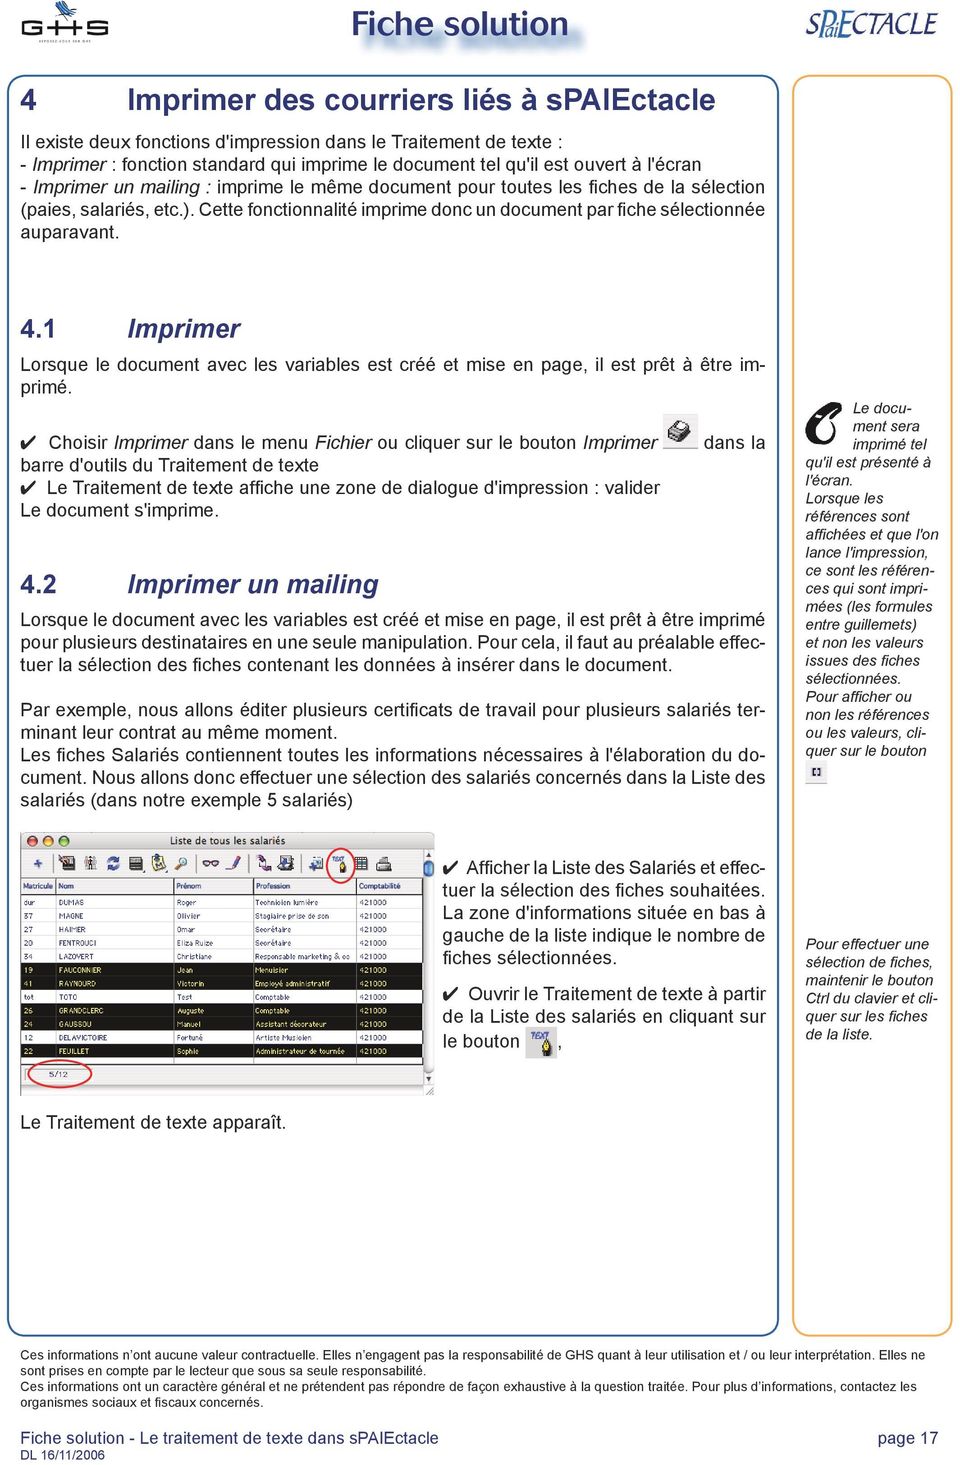 1 Imprimer Lorsque le document avec les variables est créé et mise en page, il est prêt à être imprimé.